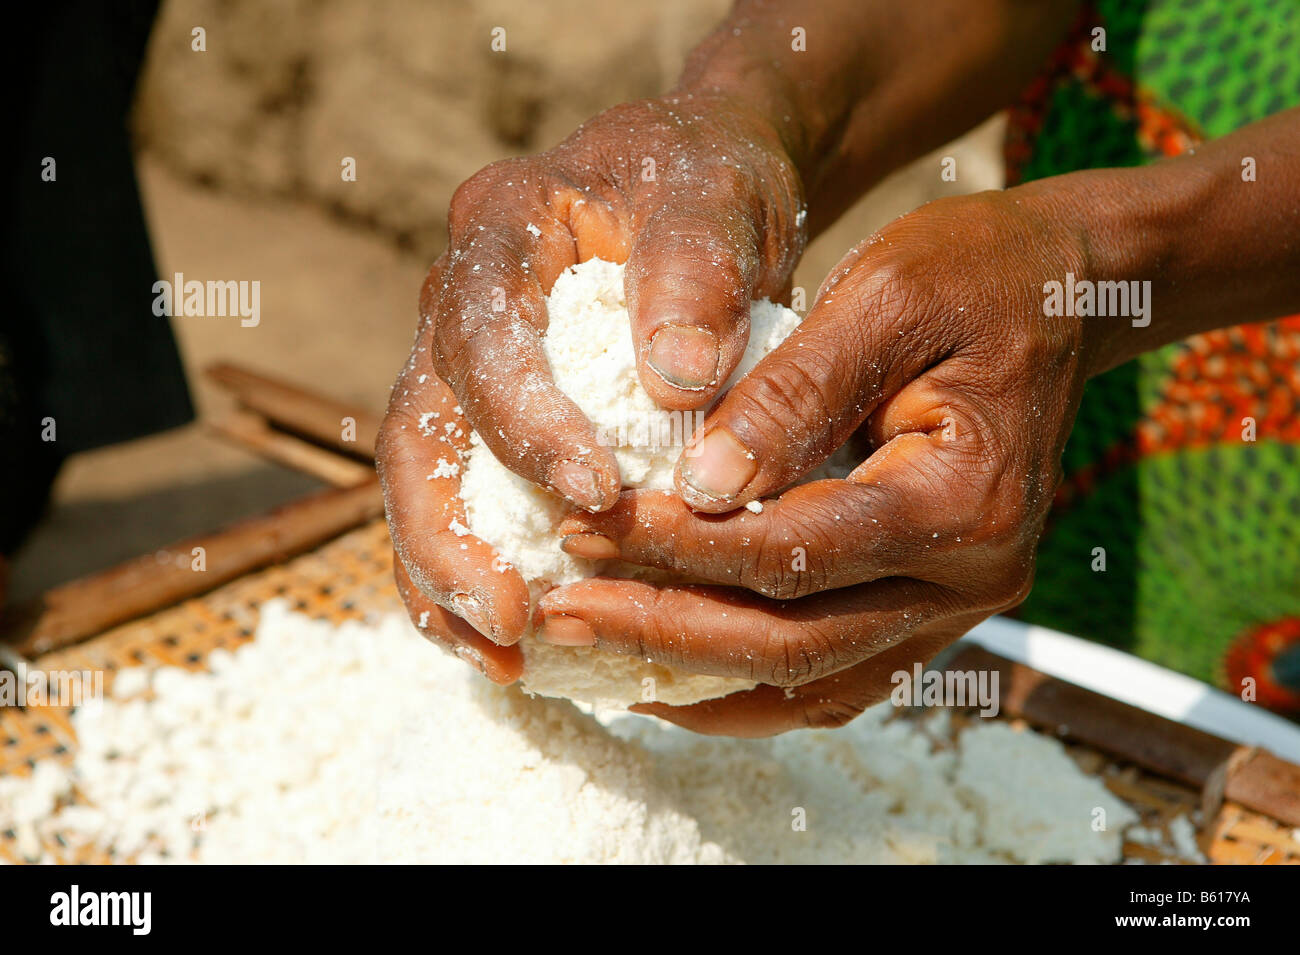 Woman's hands kneading maniok durant la préparation de flocons maniok, Bamenda, Cameroun, Afrique Banque D'Images